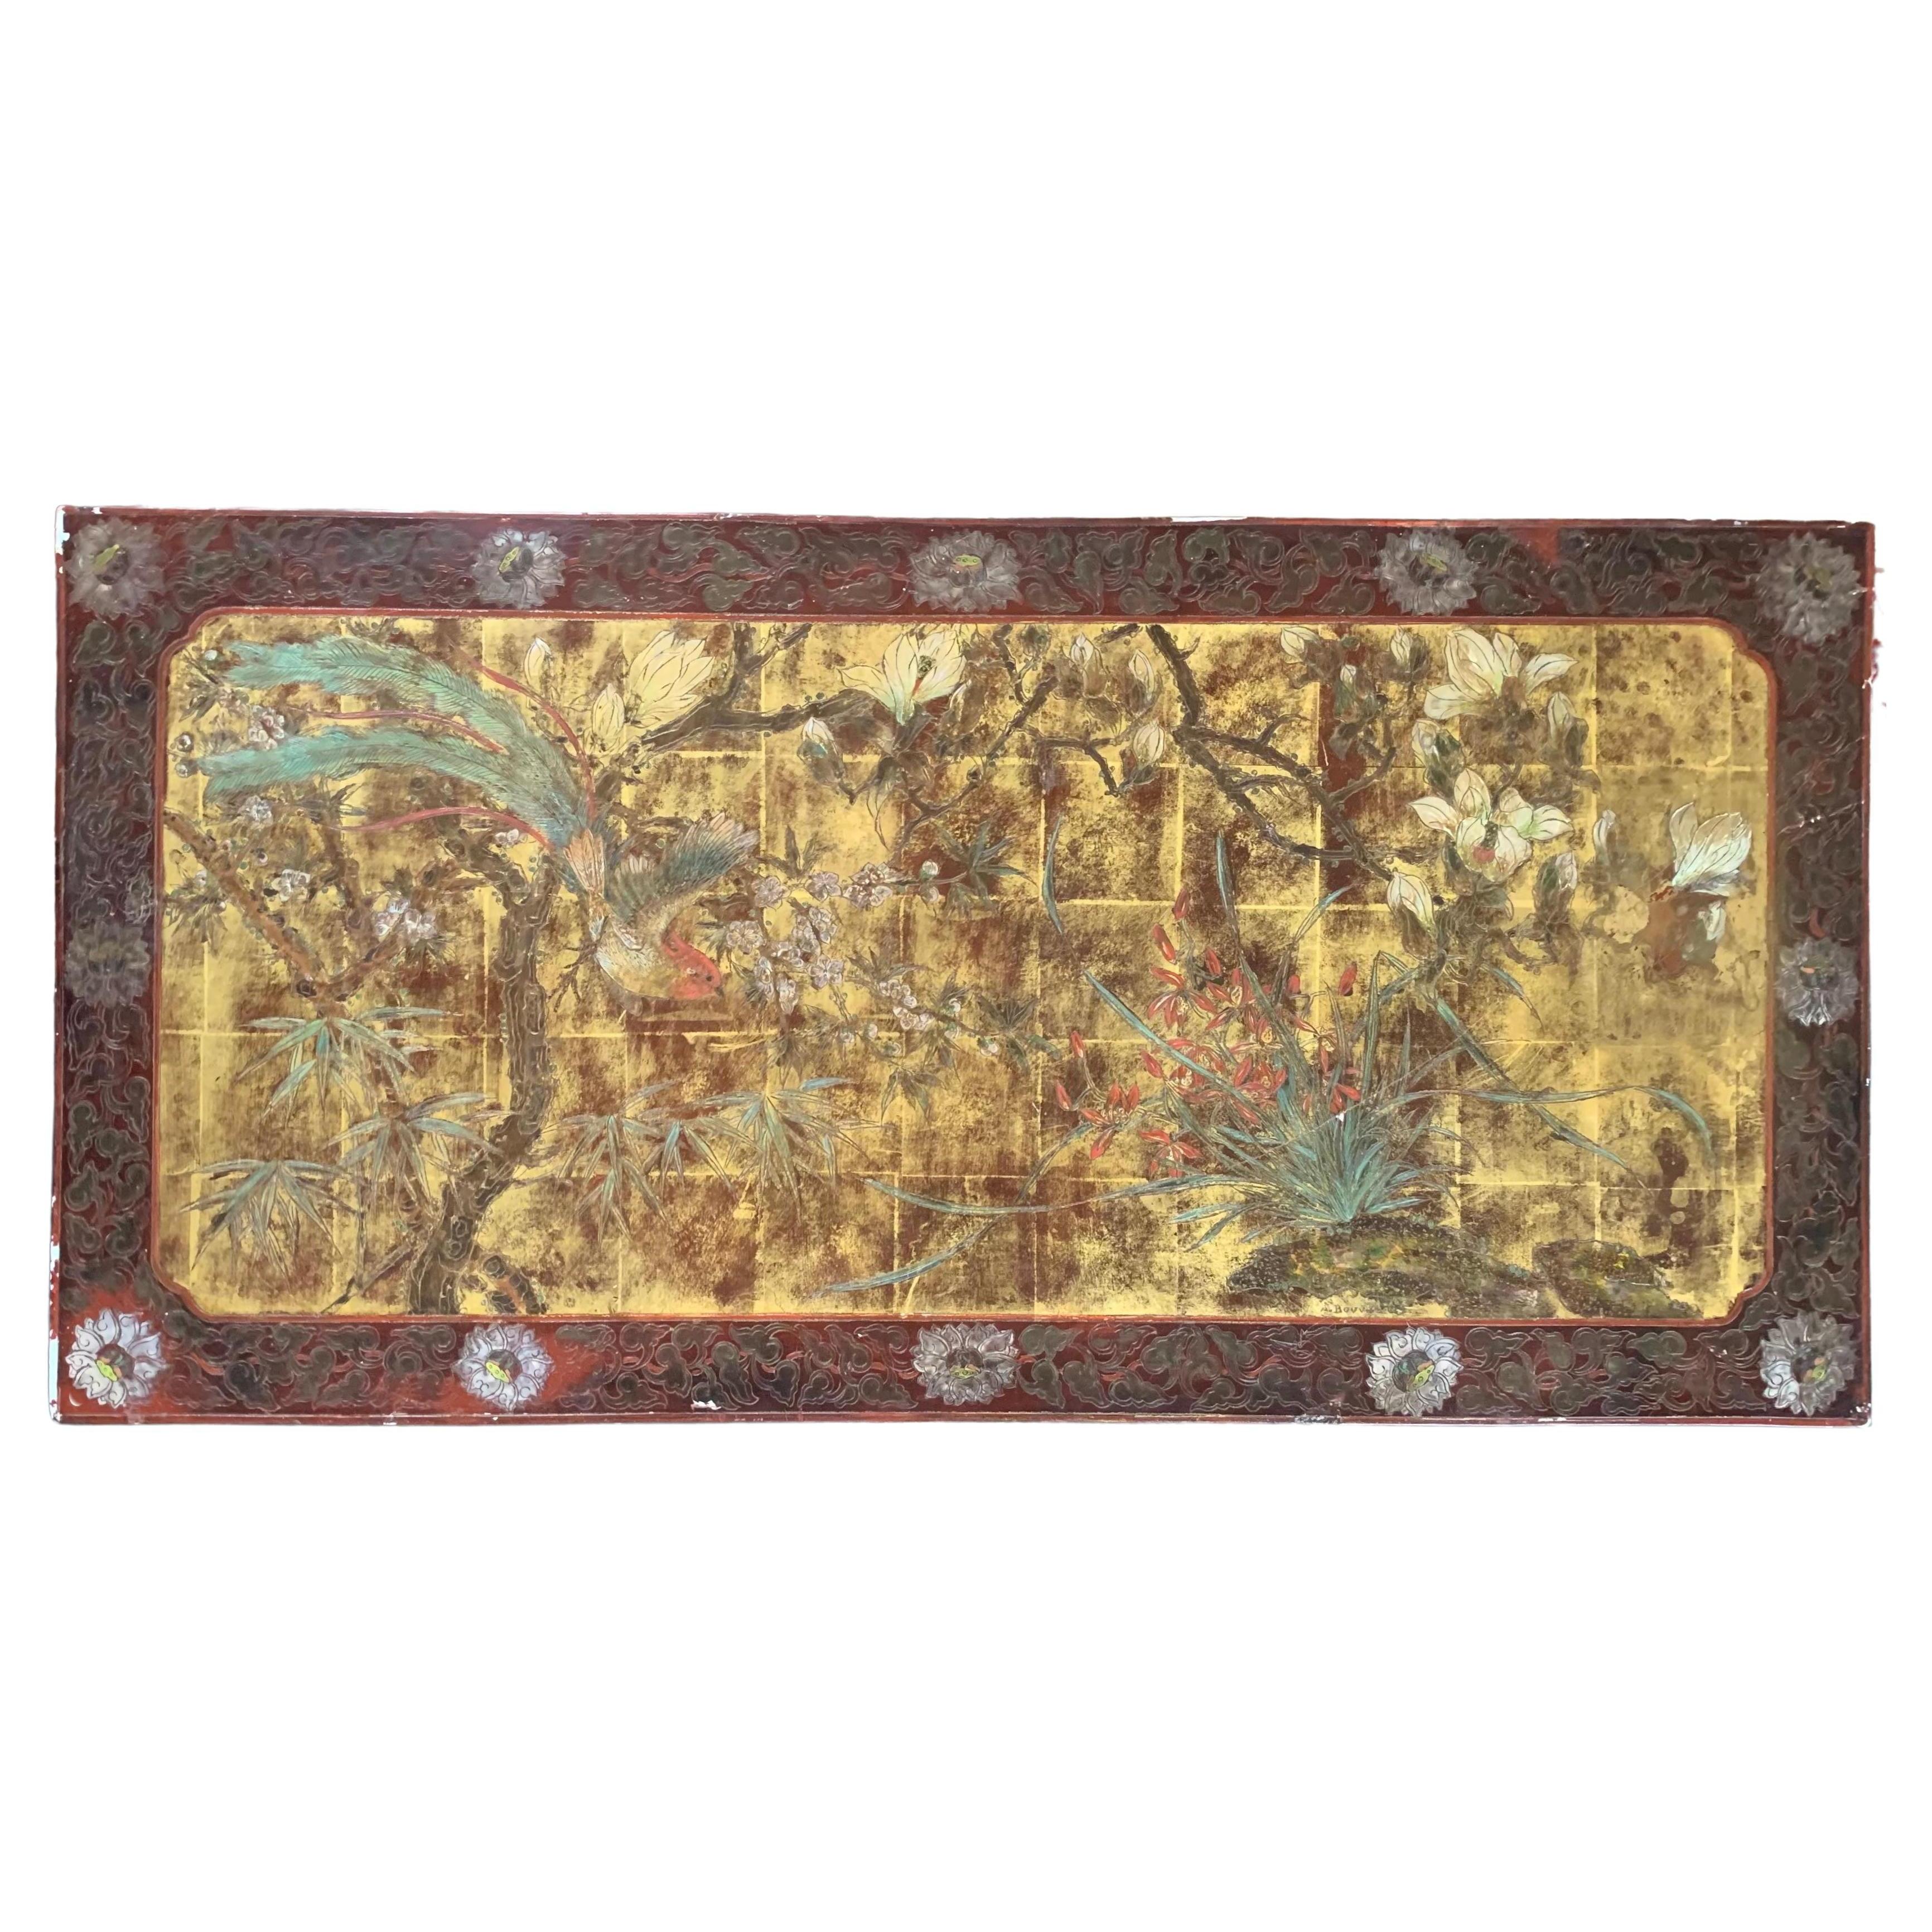 Chinesisch inspiriertes lackiertes Tafelpaneel von A.Bouverat, handbemalt, 20. Jahrhundert